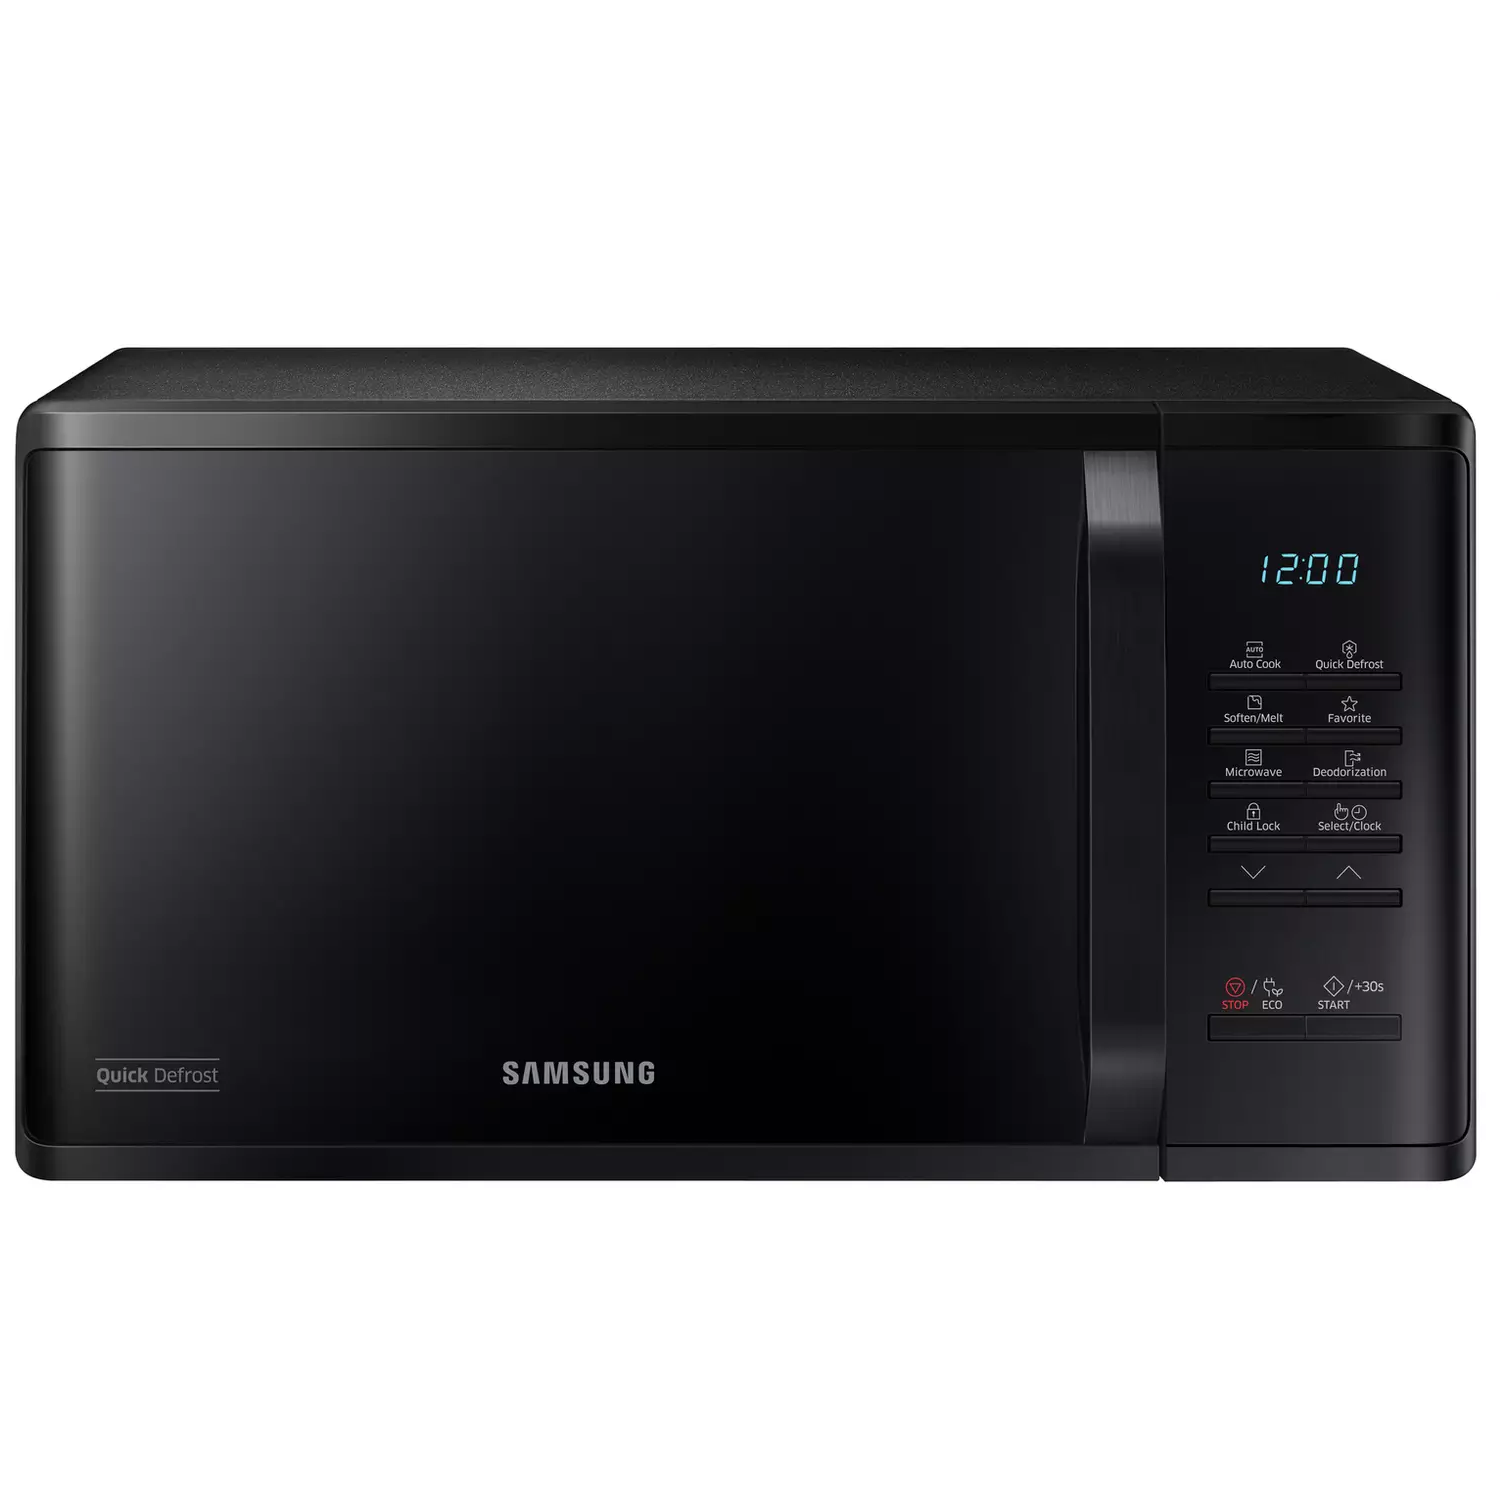 Samsung 800W 23L Standard Microwave MS23K3513AK – Black